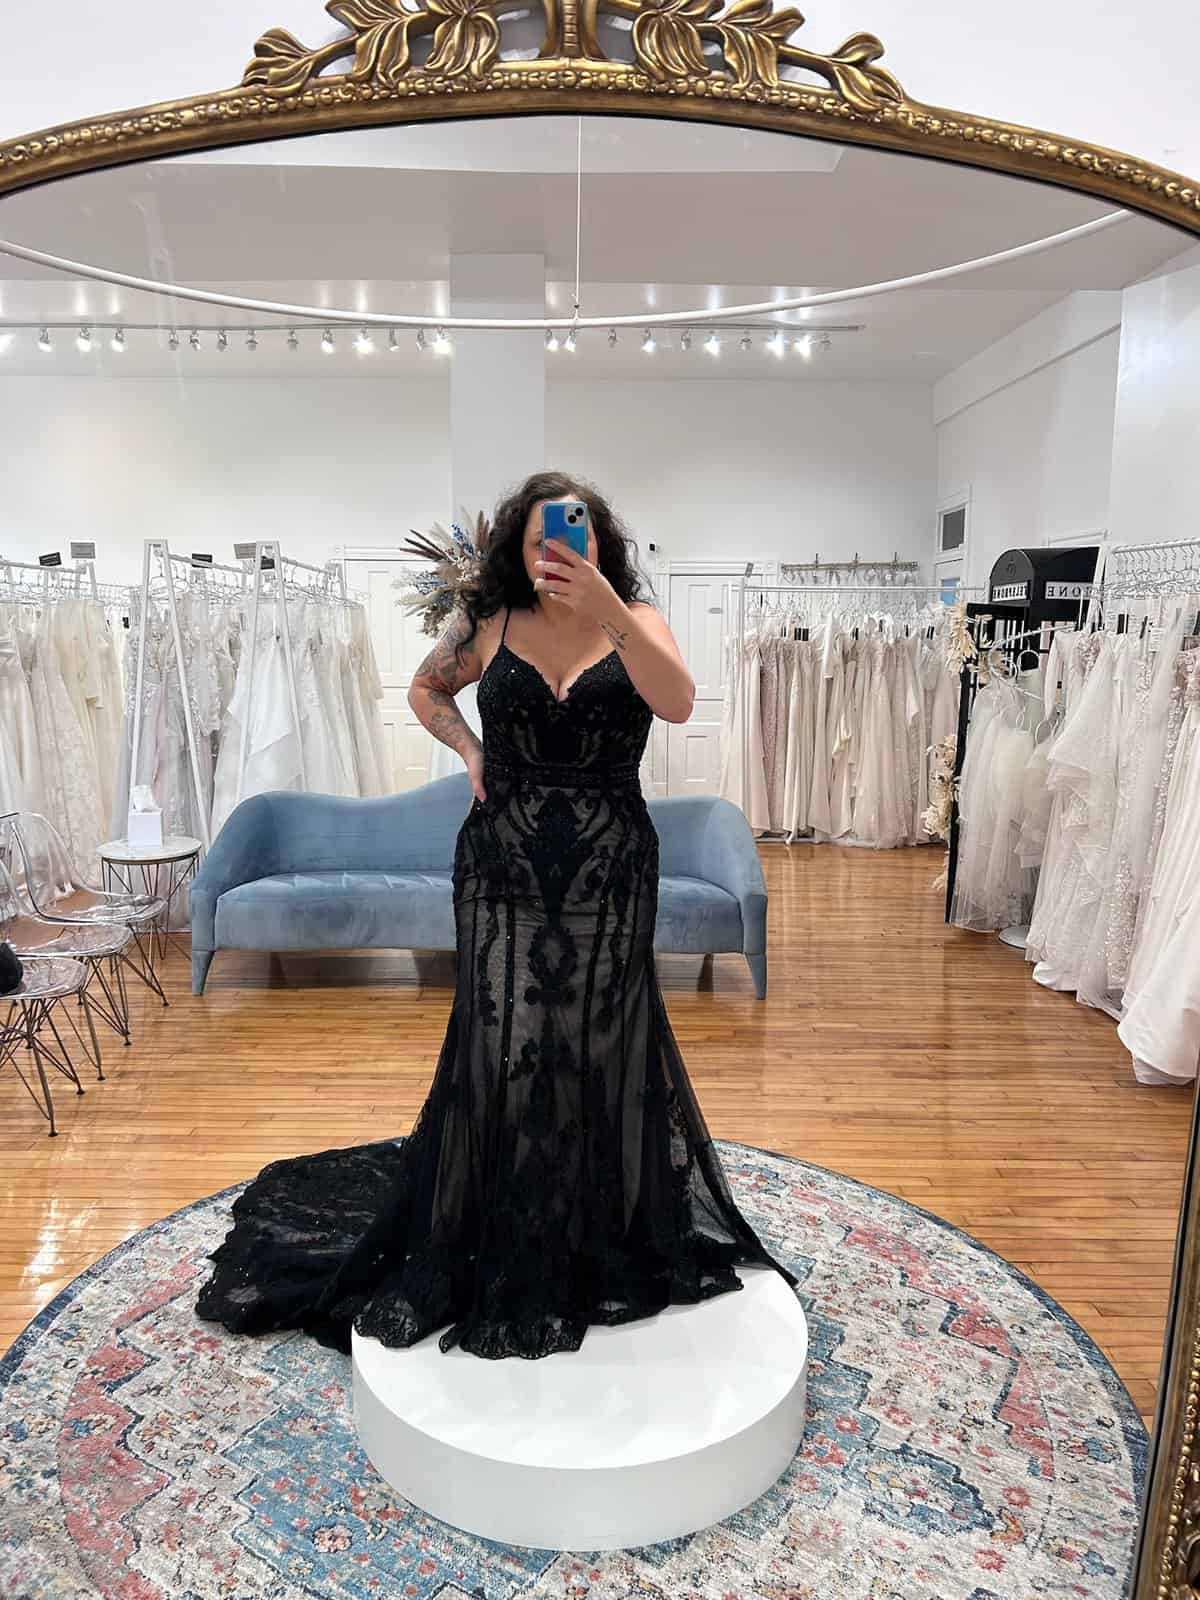 should i wear a black wedding dress?